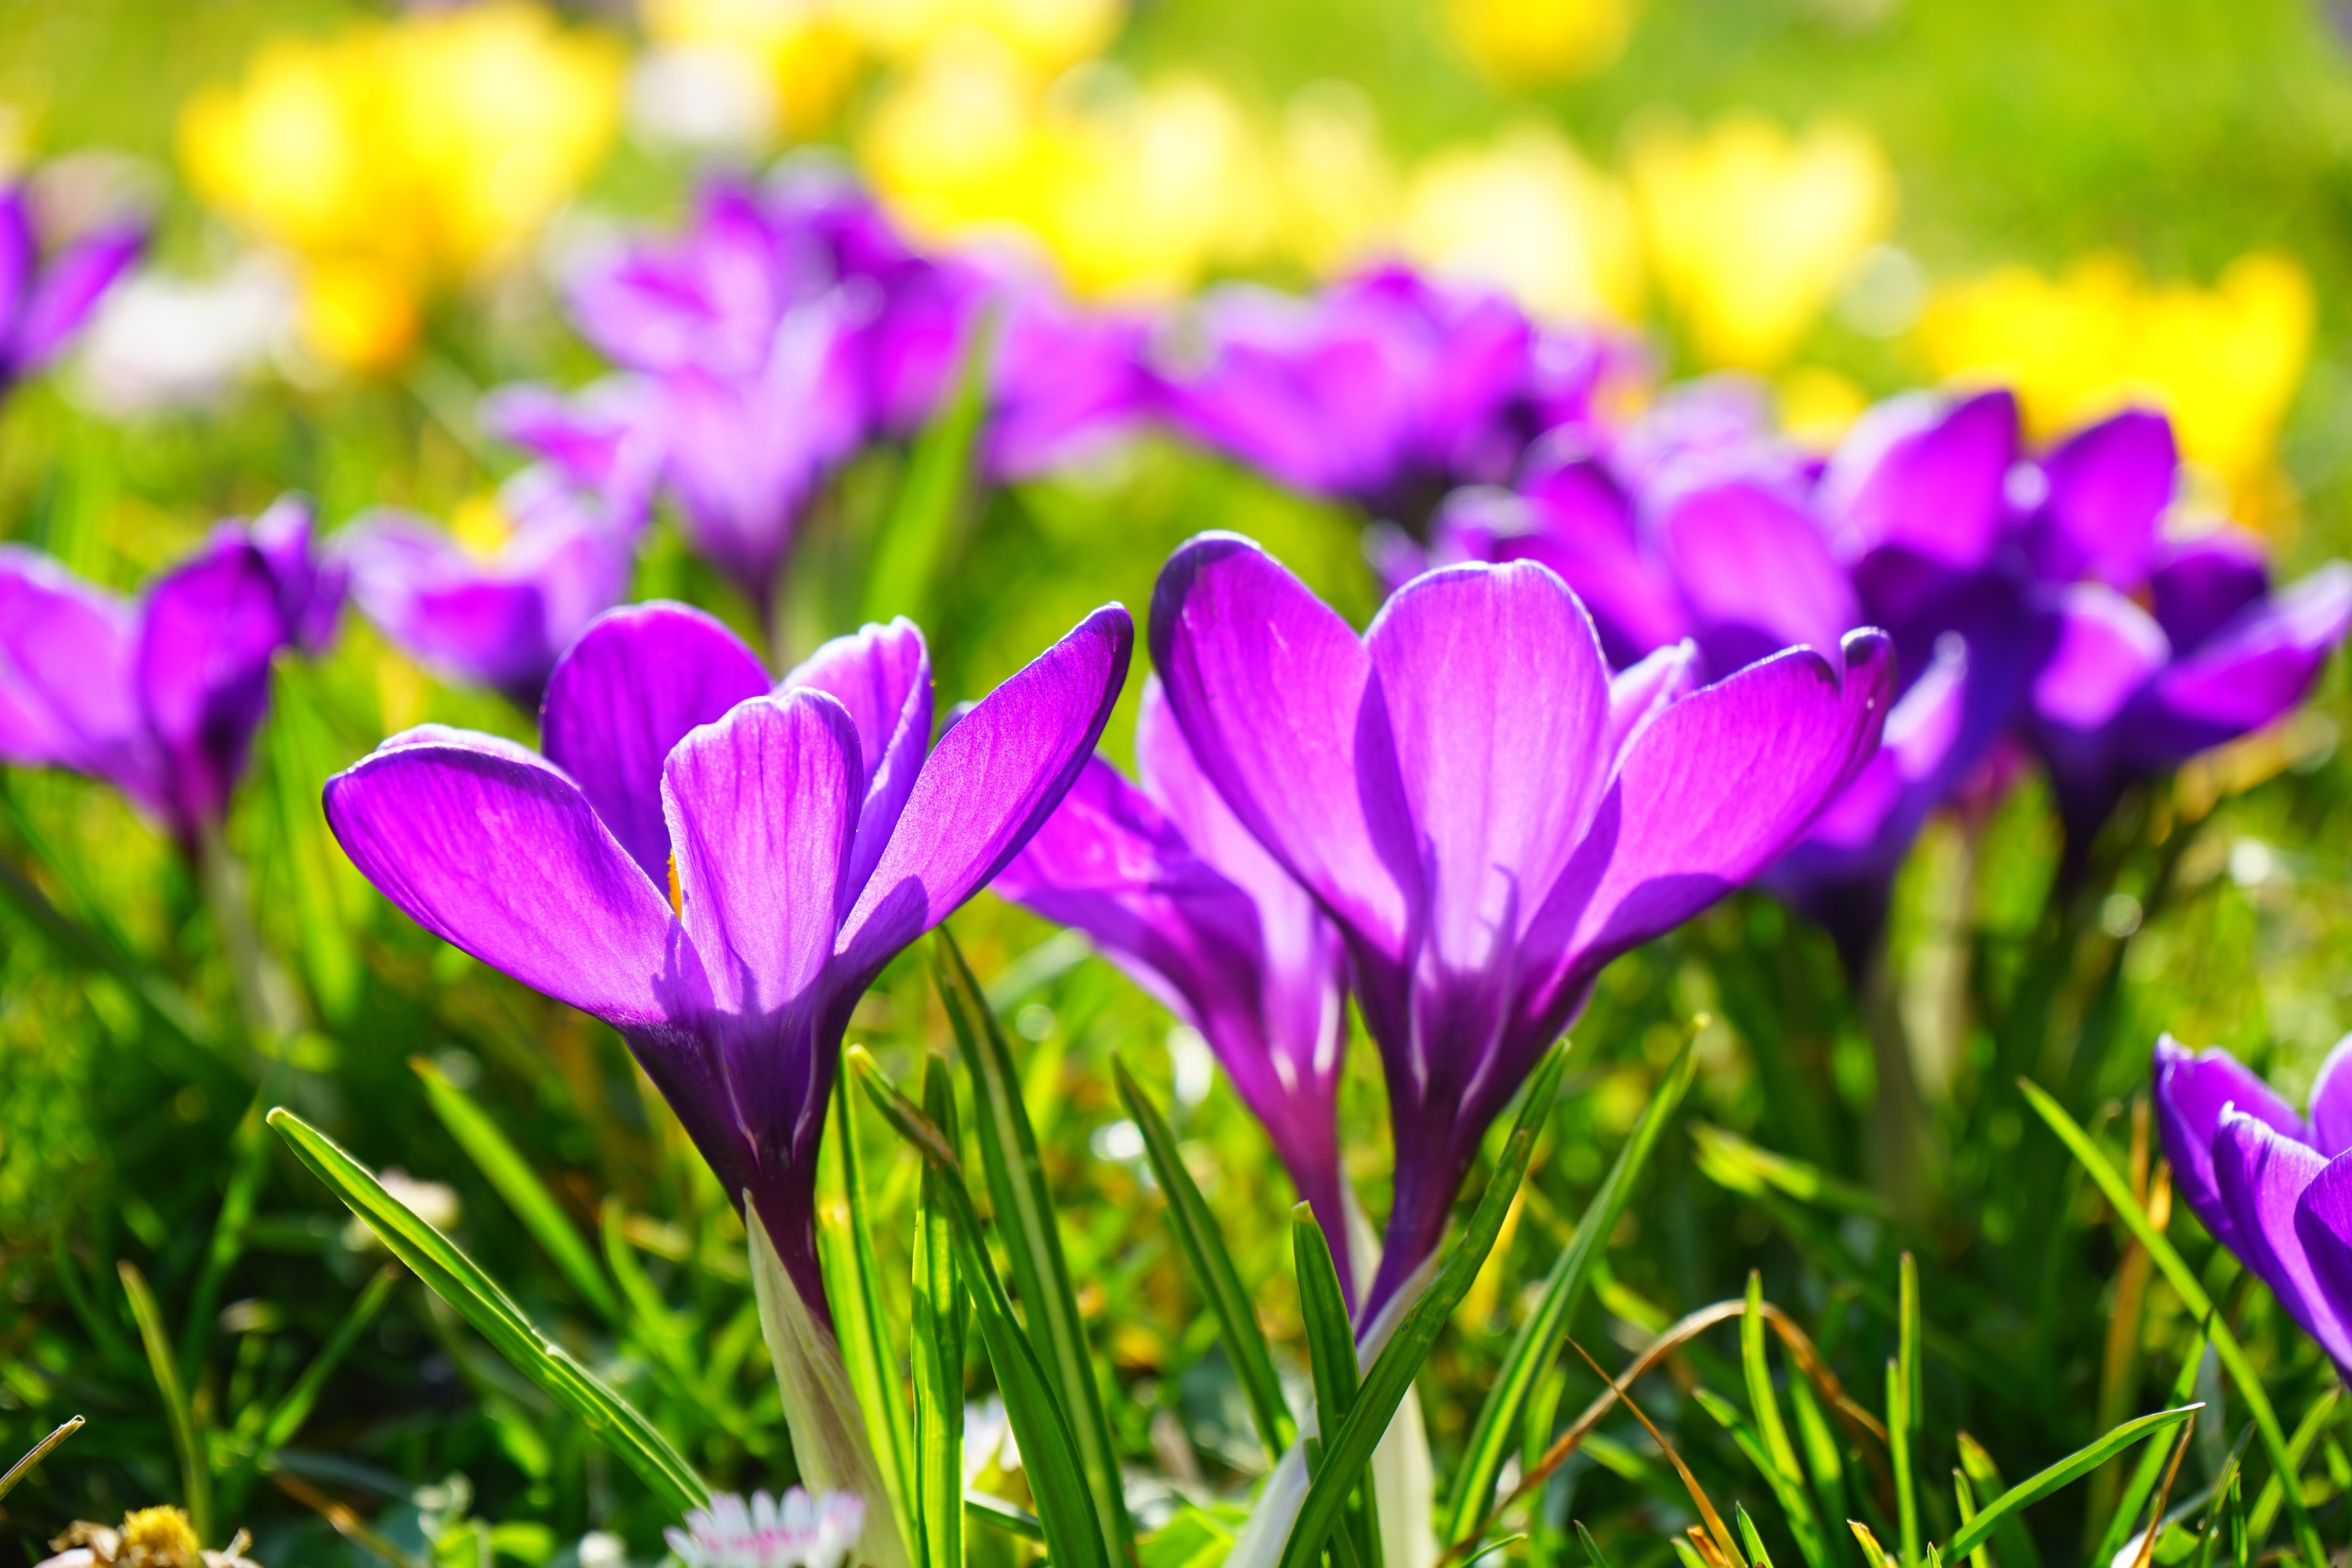 Purple Multi Petaled Flower · Free Stock Photo